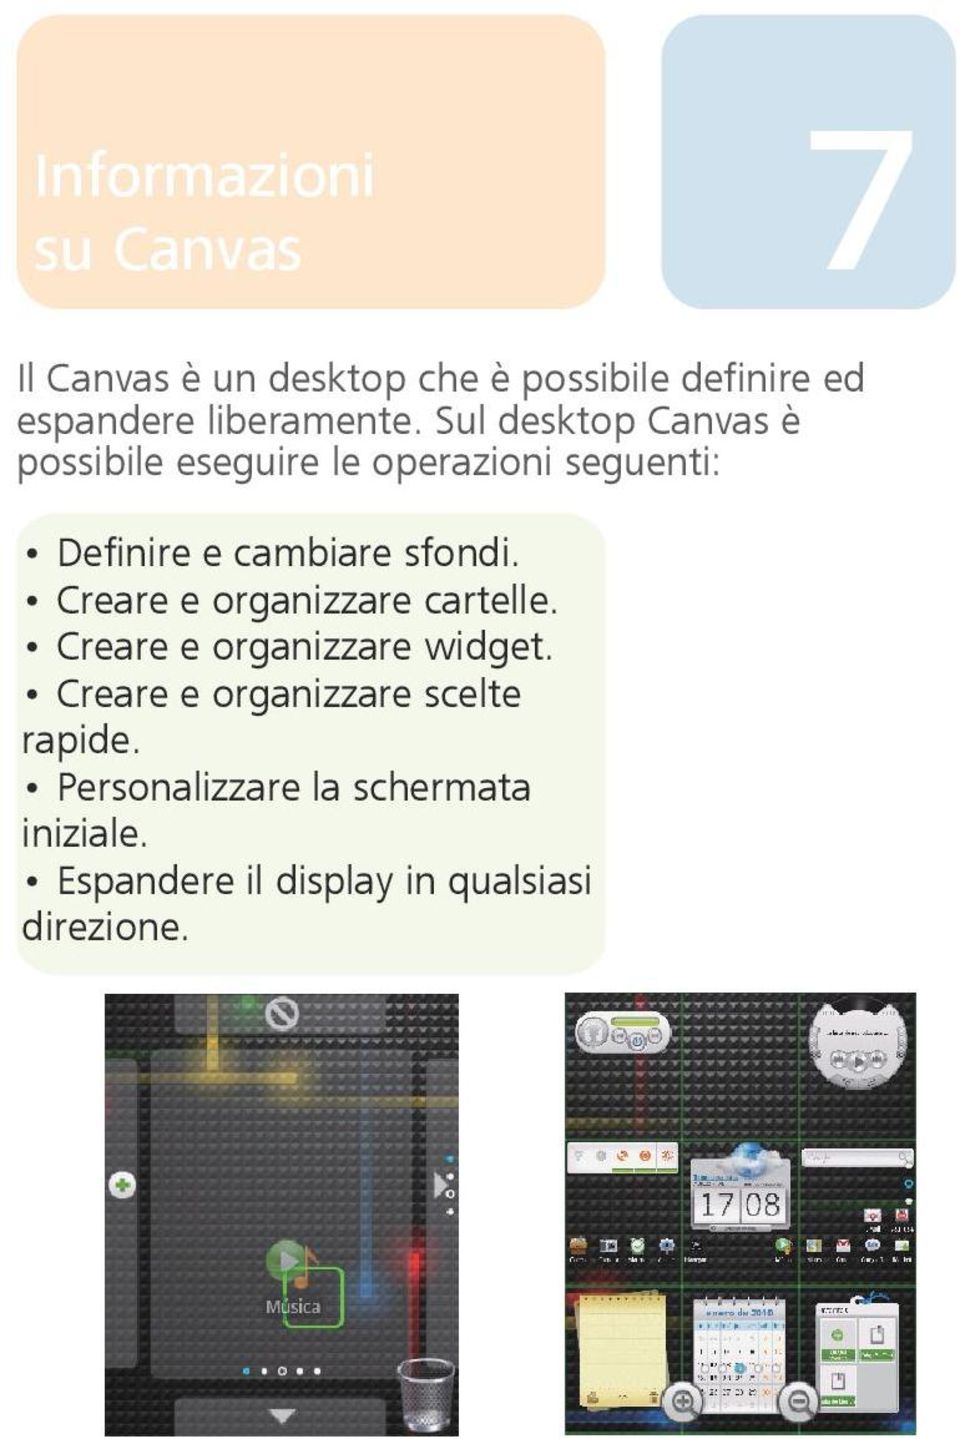 Sul desktop Canvas è possibile eseguire le operazioni seguenti: Definire e cambiare sfondi.